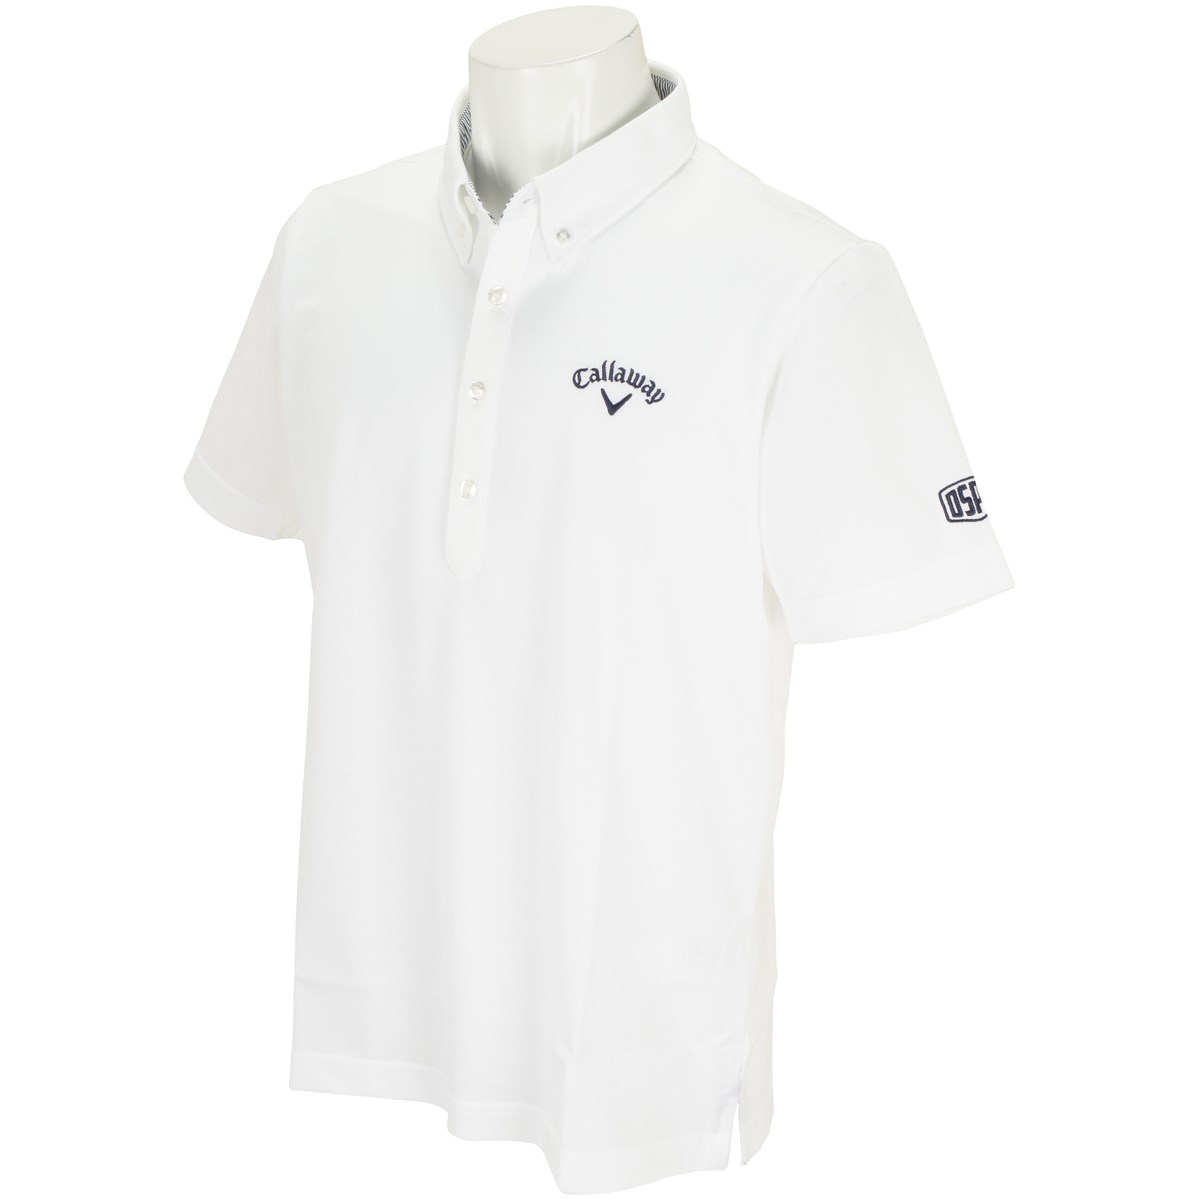 キャロウェイゴルフ(Callaway Golf) 鹿の子ボタンダウンカラー半袖ポロシャツ 